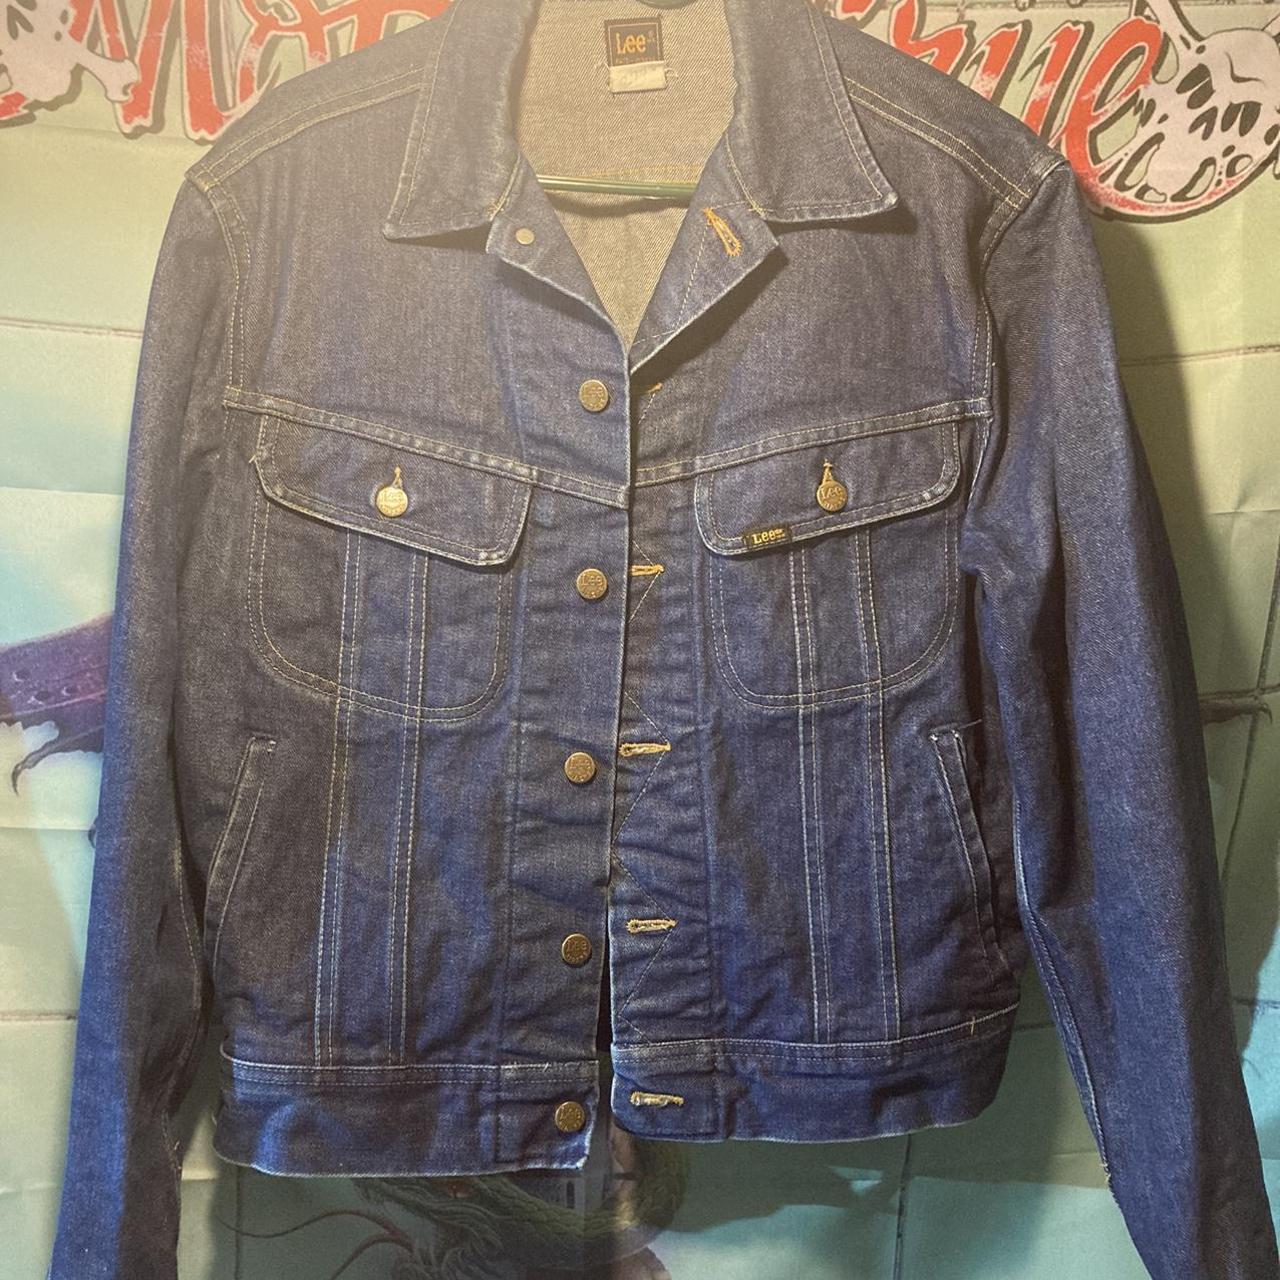 Vintage lees denim jacket size 42 long (Large) In... - Depop